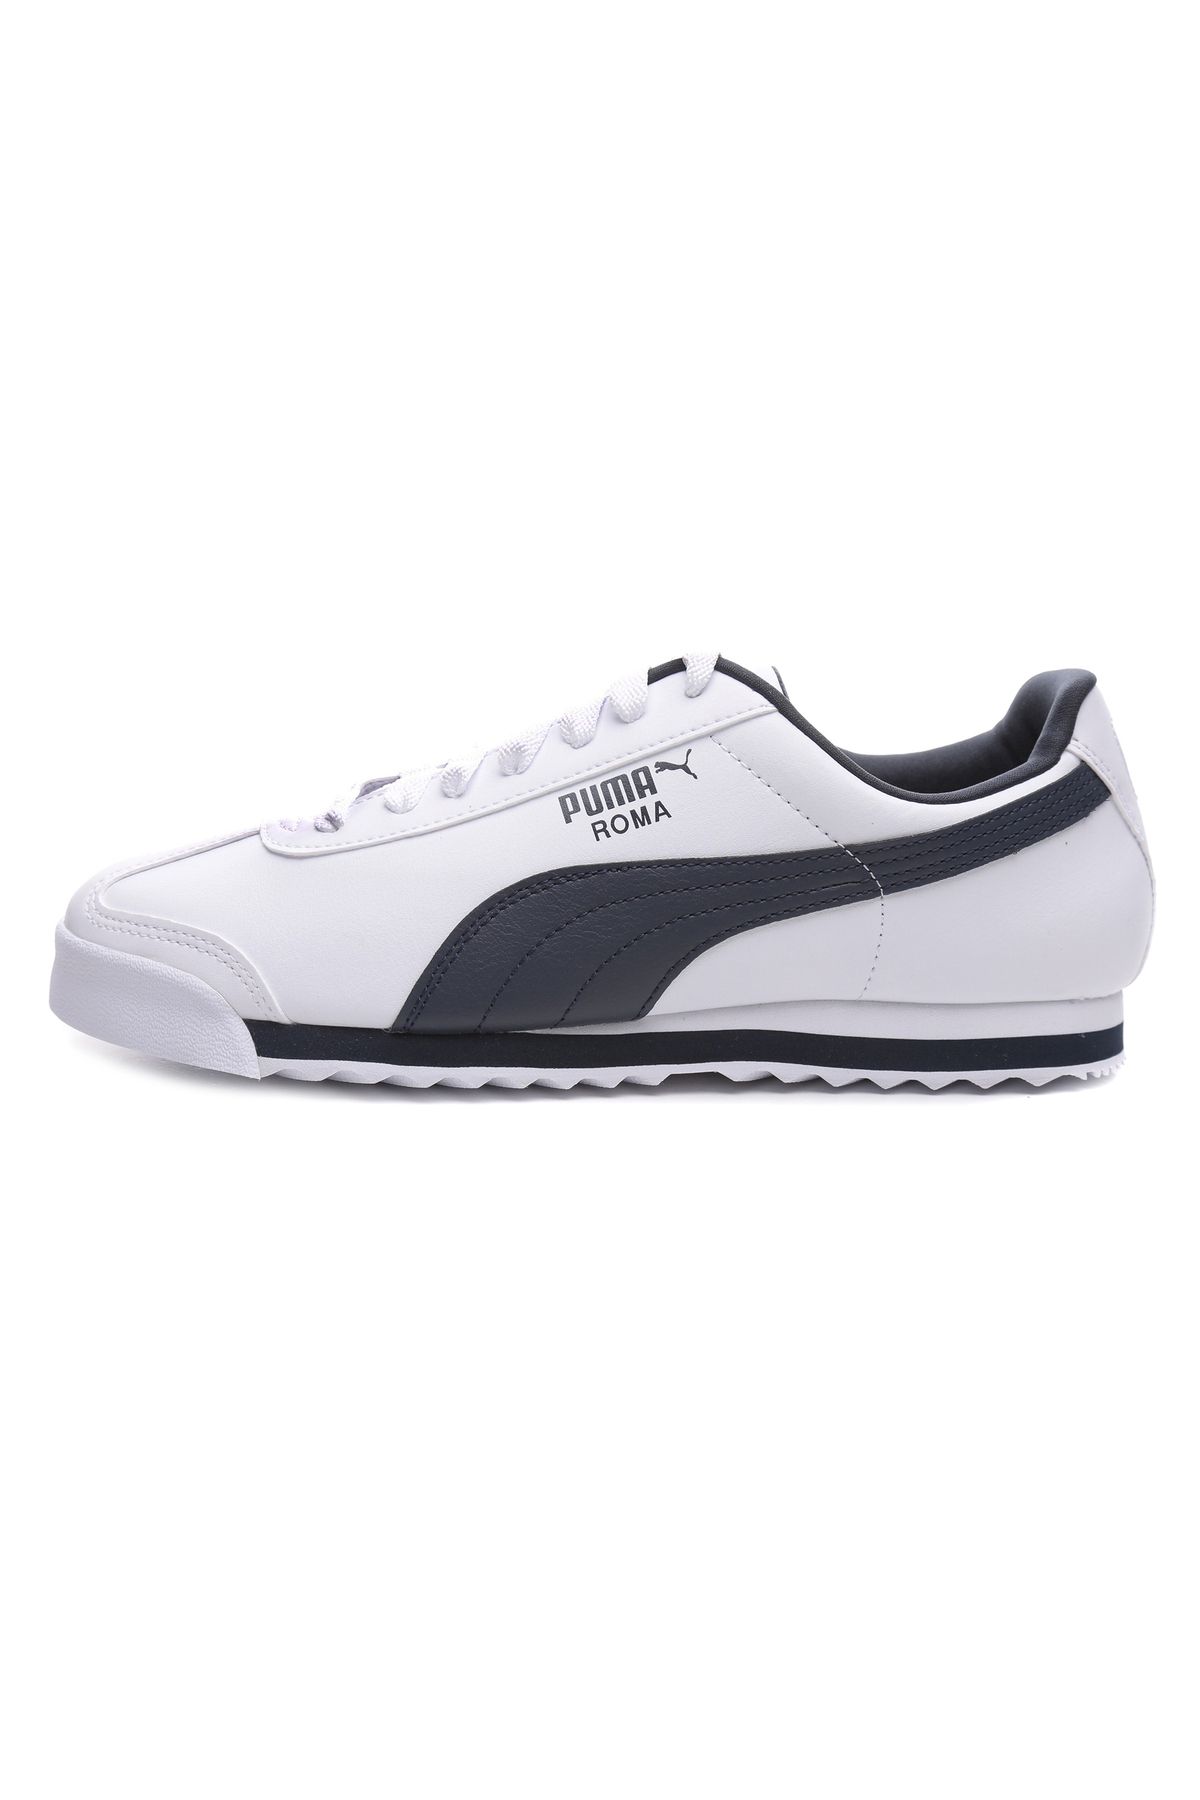 Puma 353572-12 Roma Basic Erkek Spor Ayakkabı Beyaz